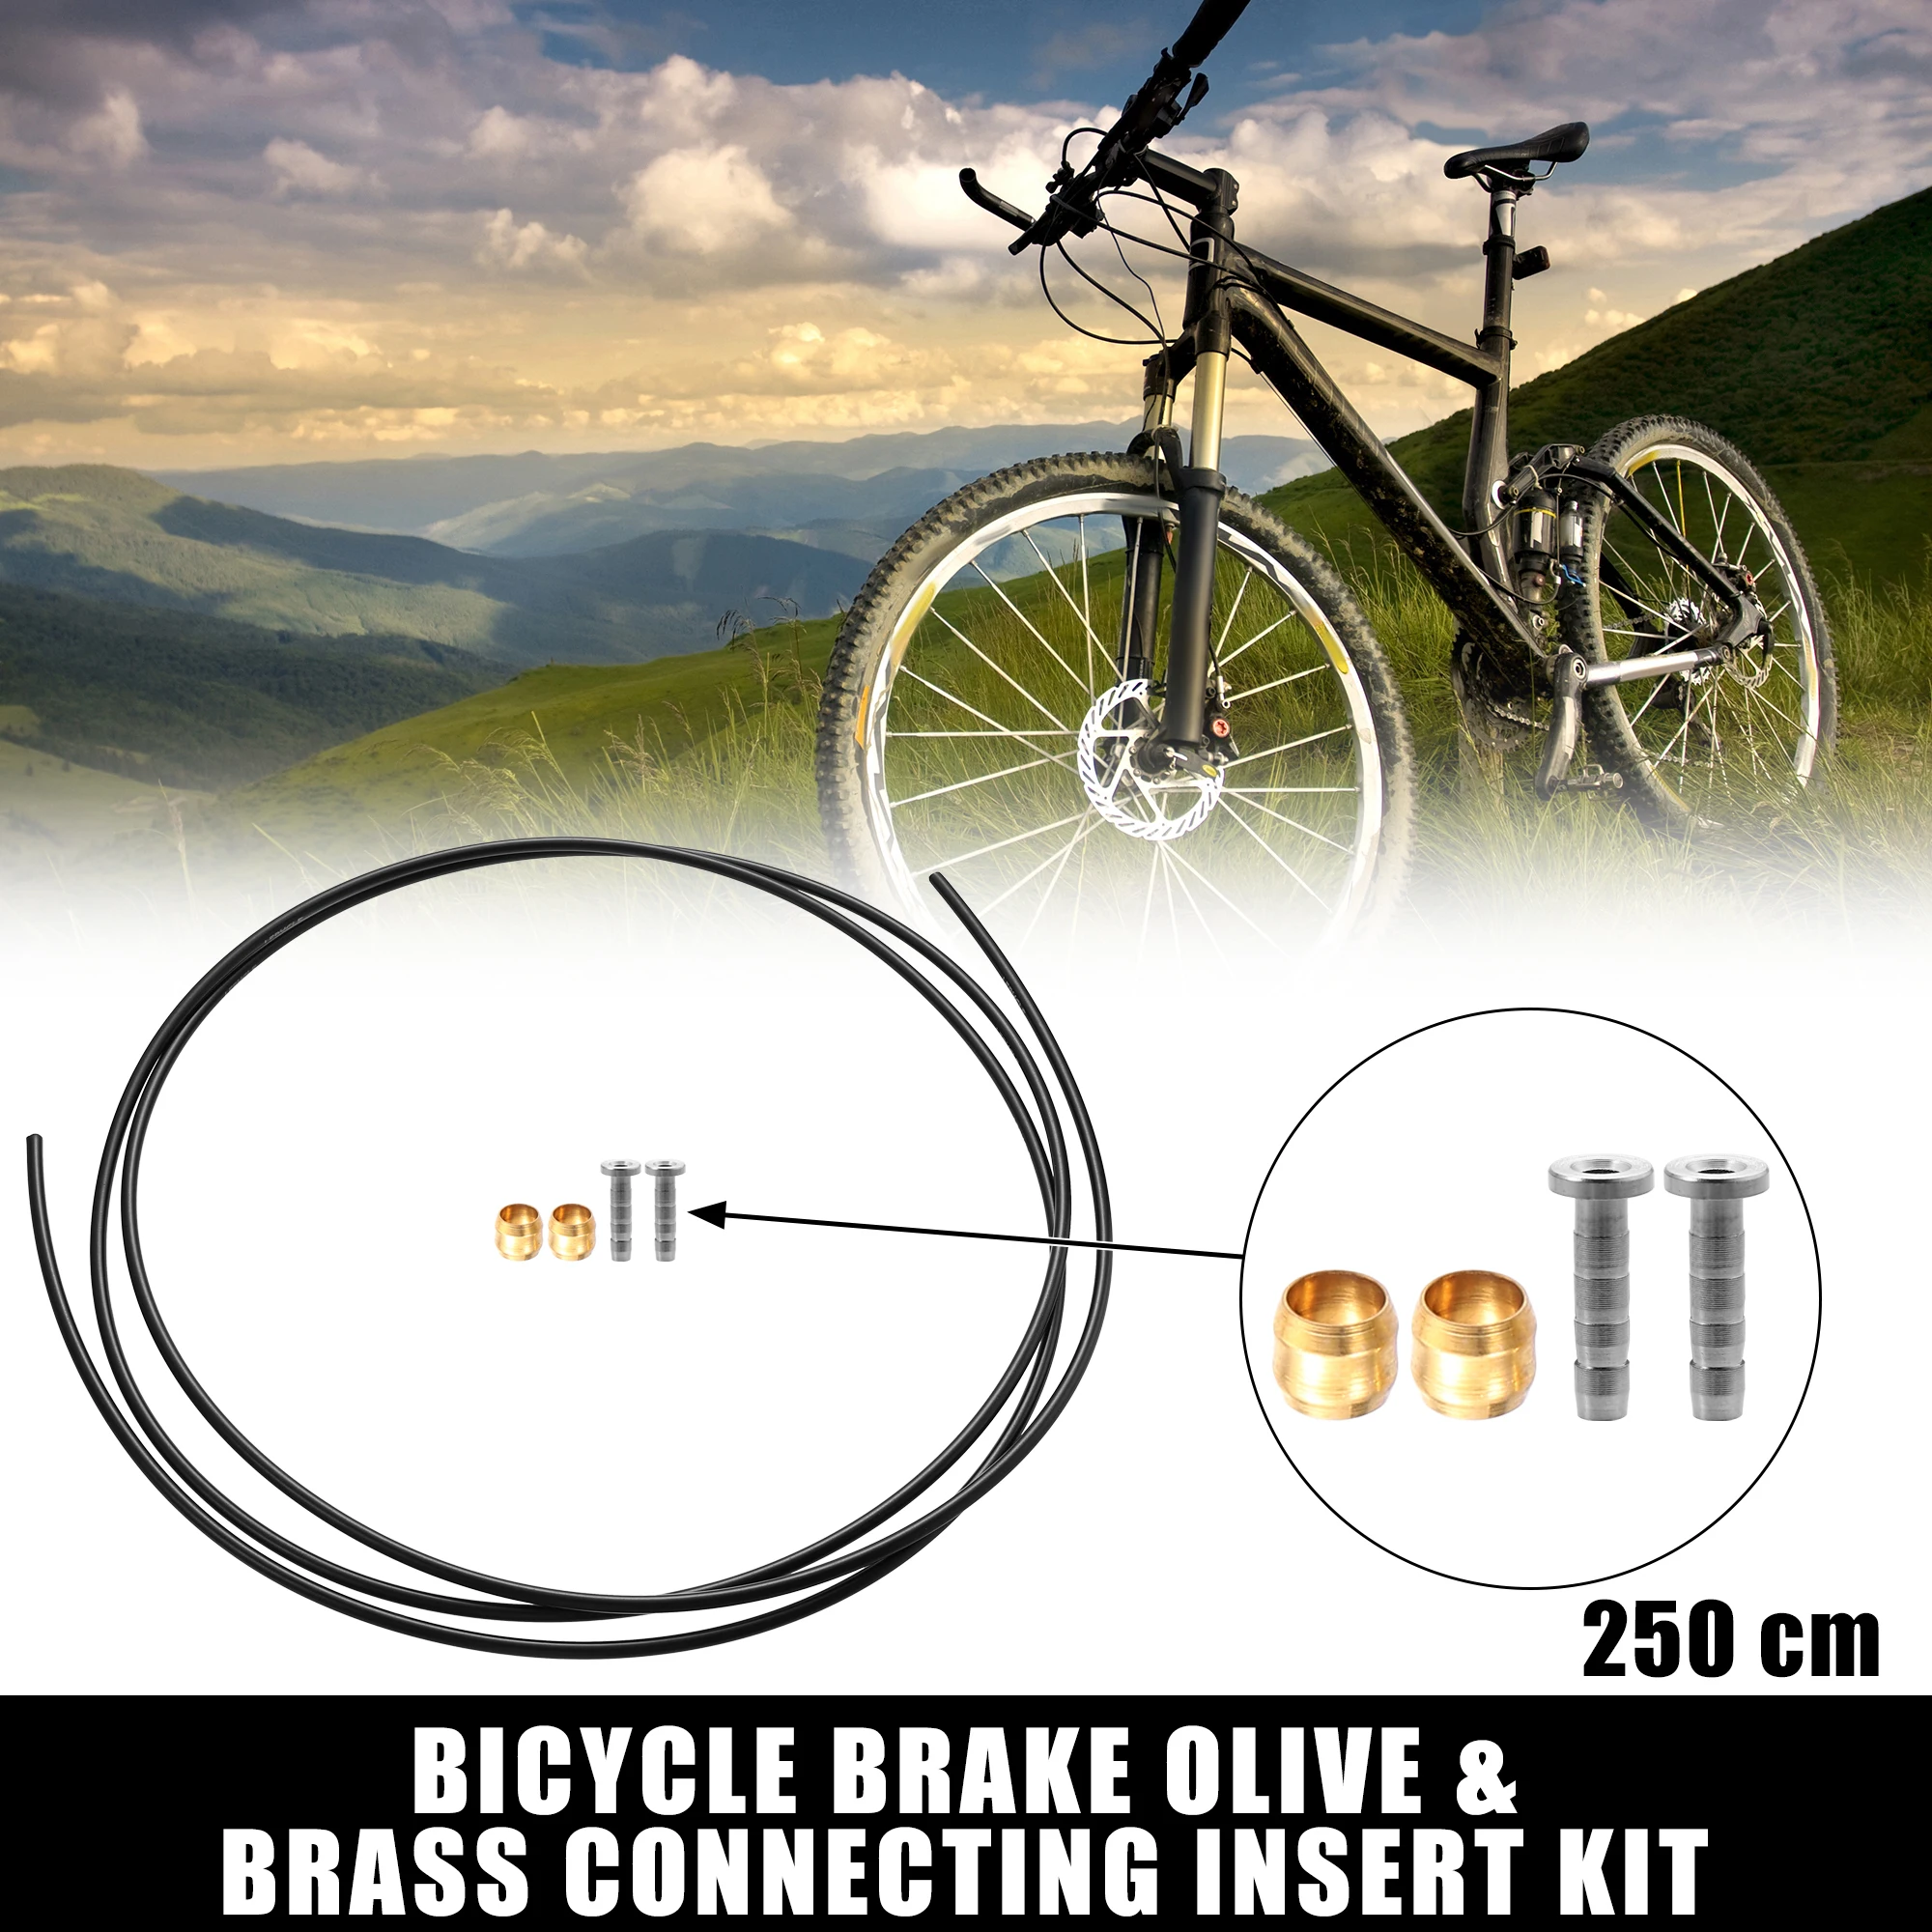 

1 комплект велосипедных тормозов X Autohaux, набор соединительных вставок из оливы и латуни для BH90 с шлангом